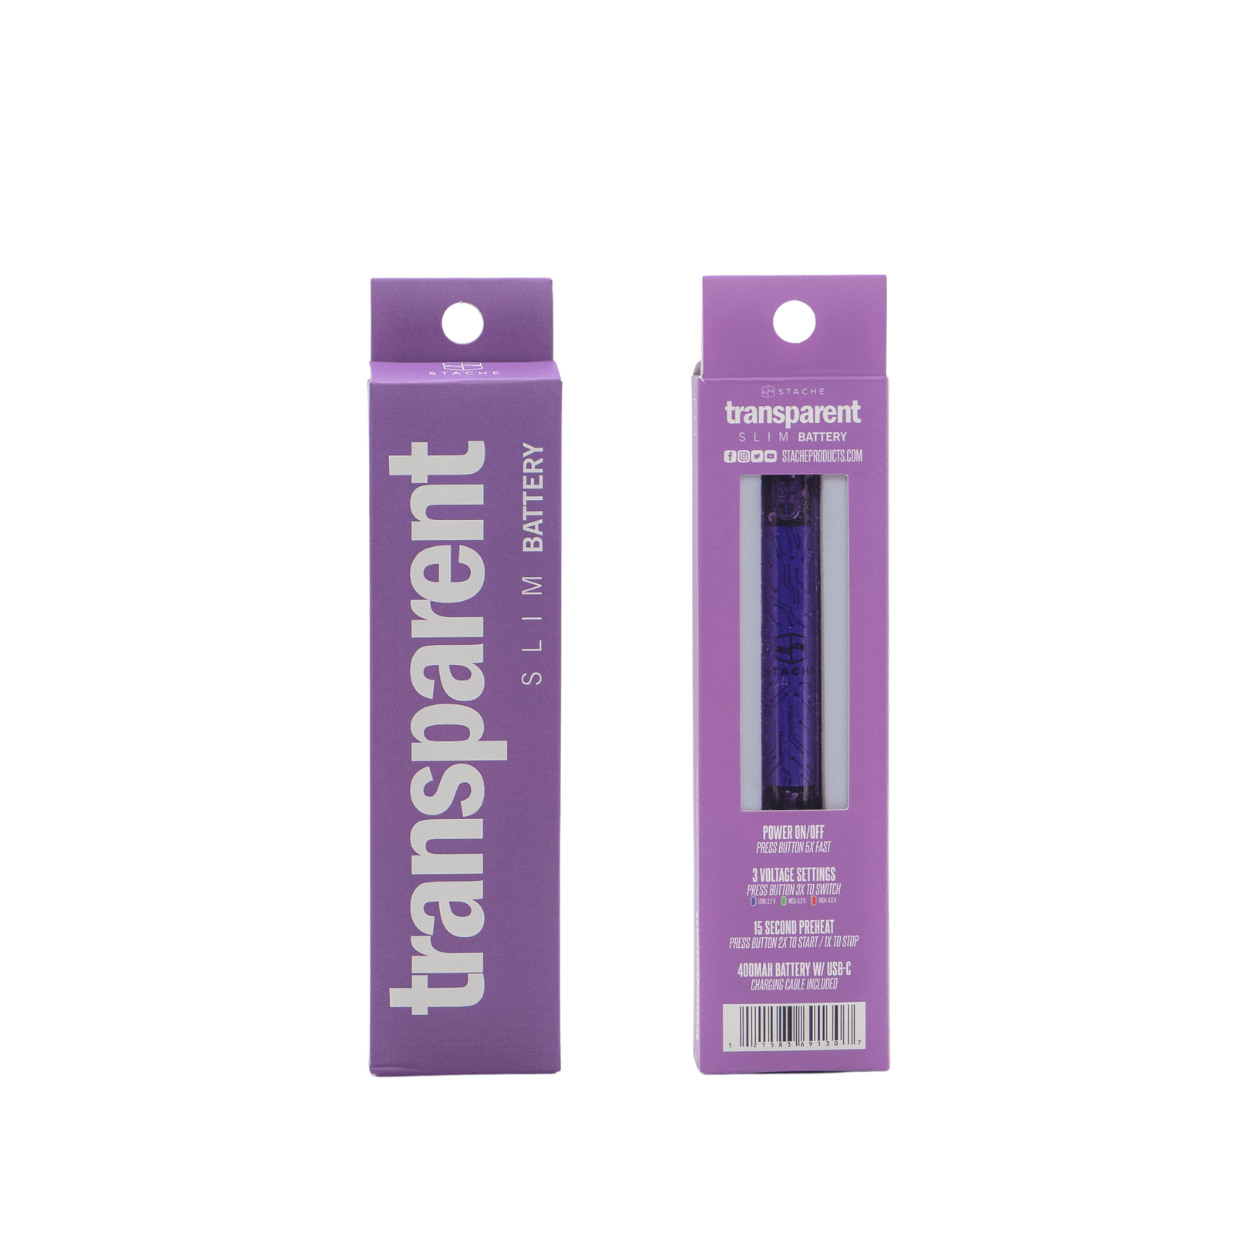 Stache Vaporizer Purple Transparent battery